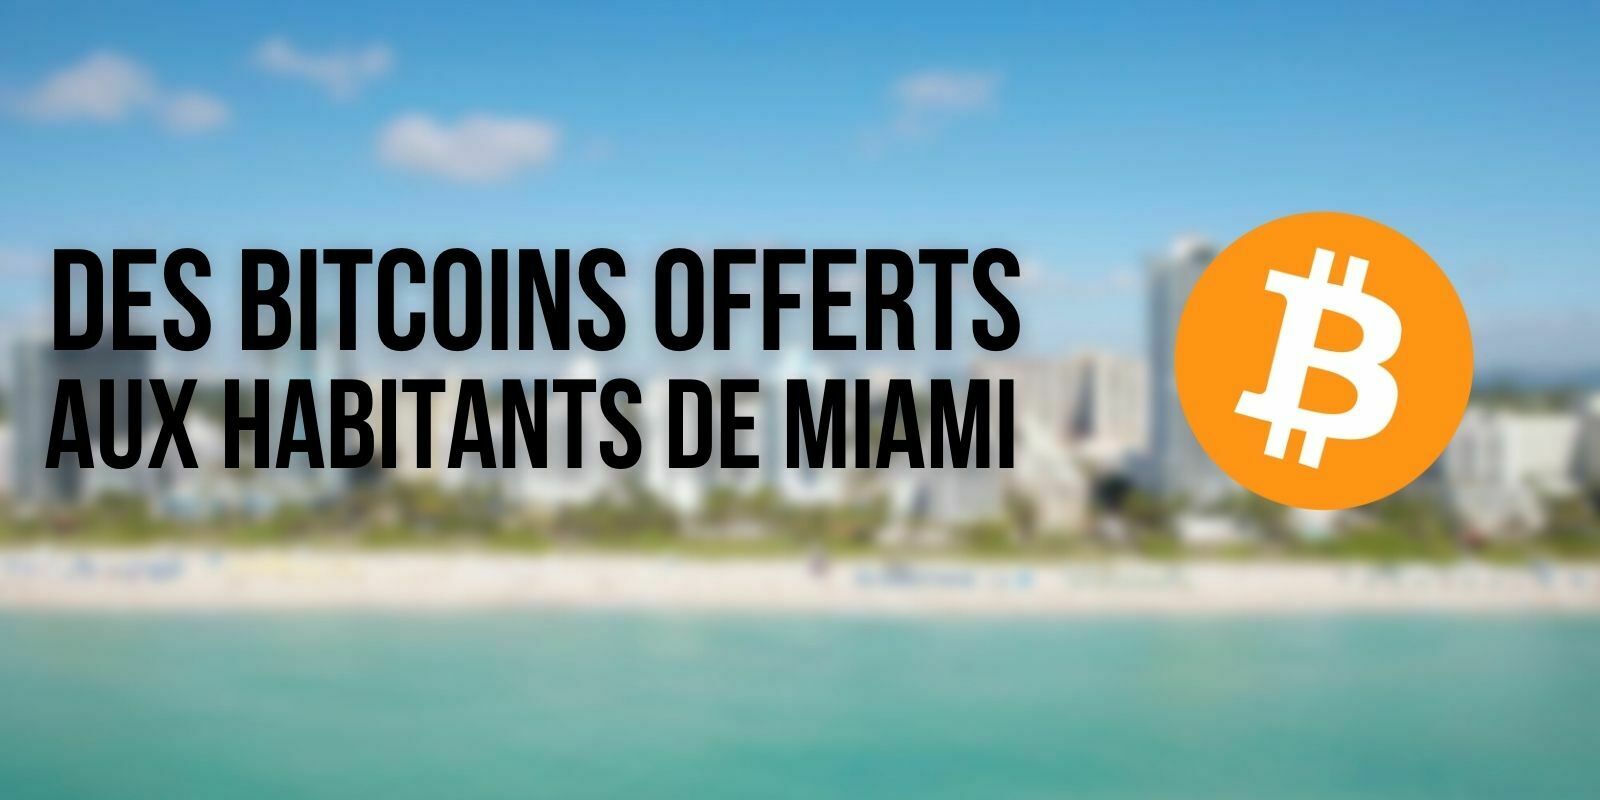 La ville de Miami va bientôt donner des bitcoins (BTC) à ses habitants